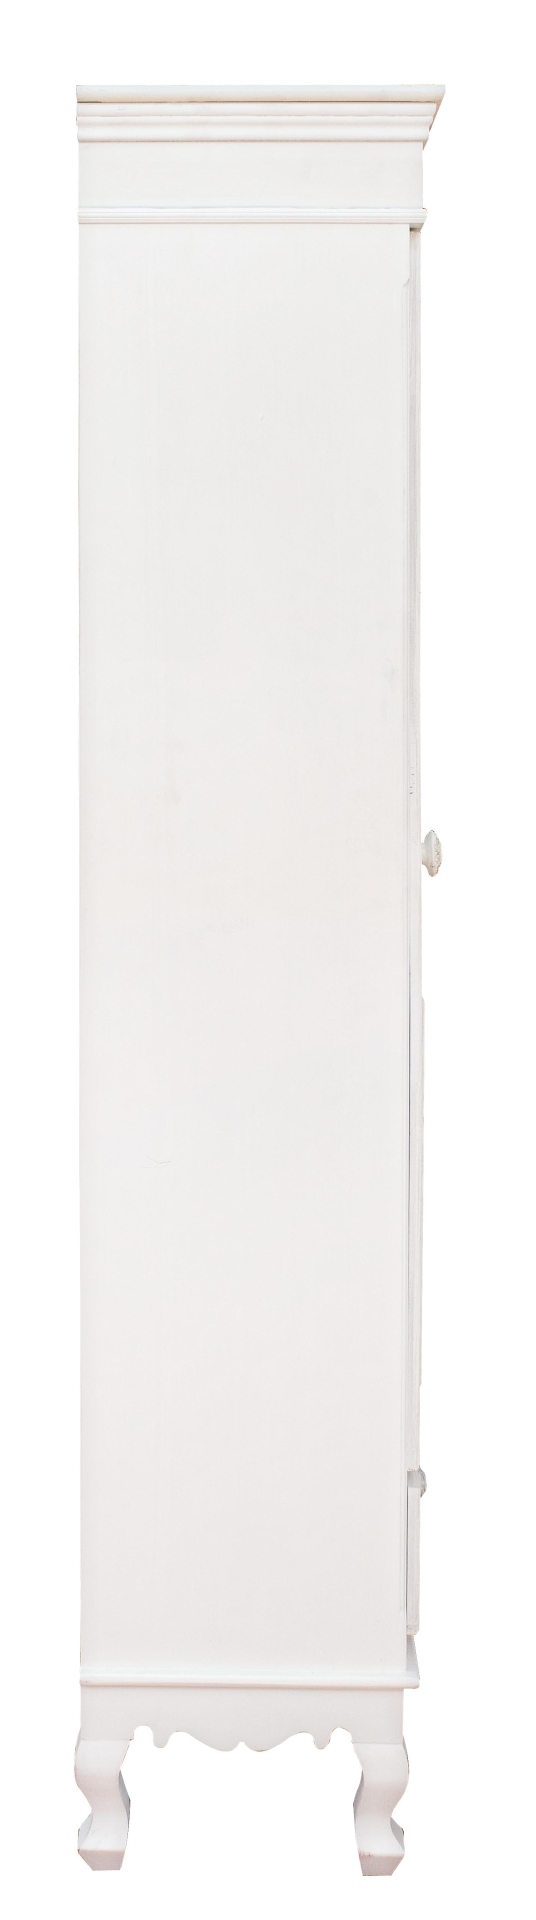 Die Vitrine Clorine überzeugt mit ihrem klassischen Design. Gefertigt wurde sie aus MDF, welches einen weißen Farbton besitzt. Die Vitrine verfügt über eine Glastür und eine Schublade mit ausreichend Stauraum im inneren. Die Breite beträgt 50 cm.